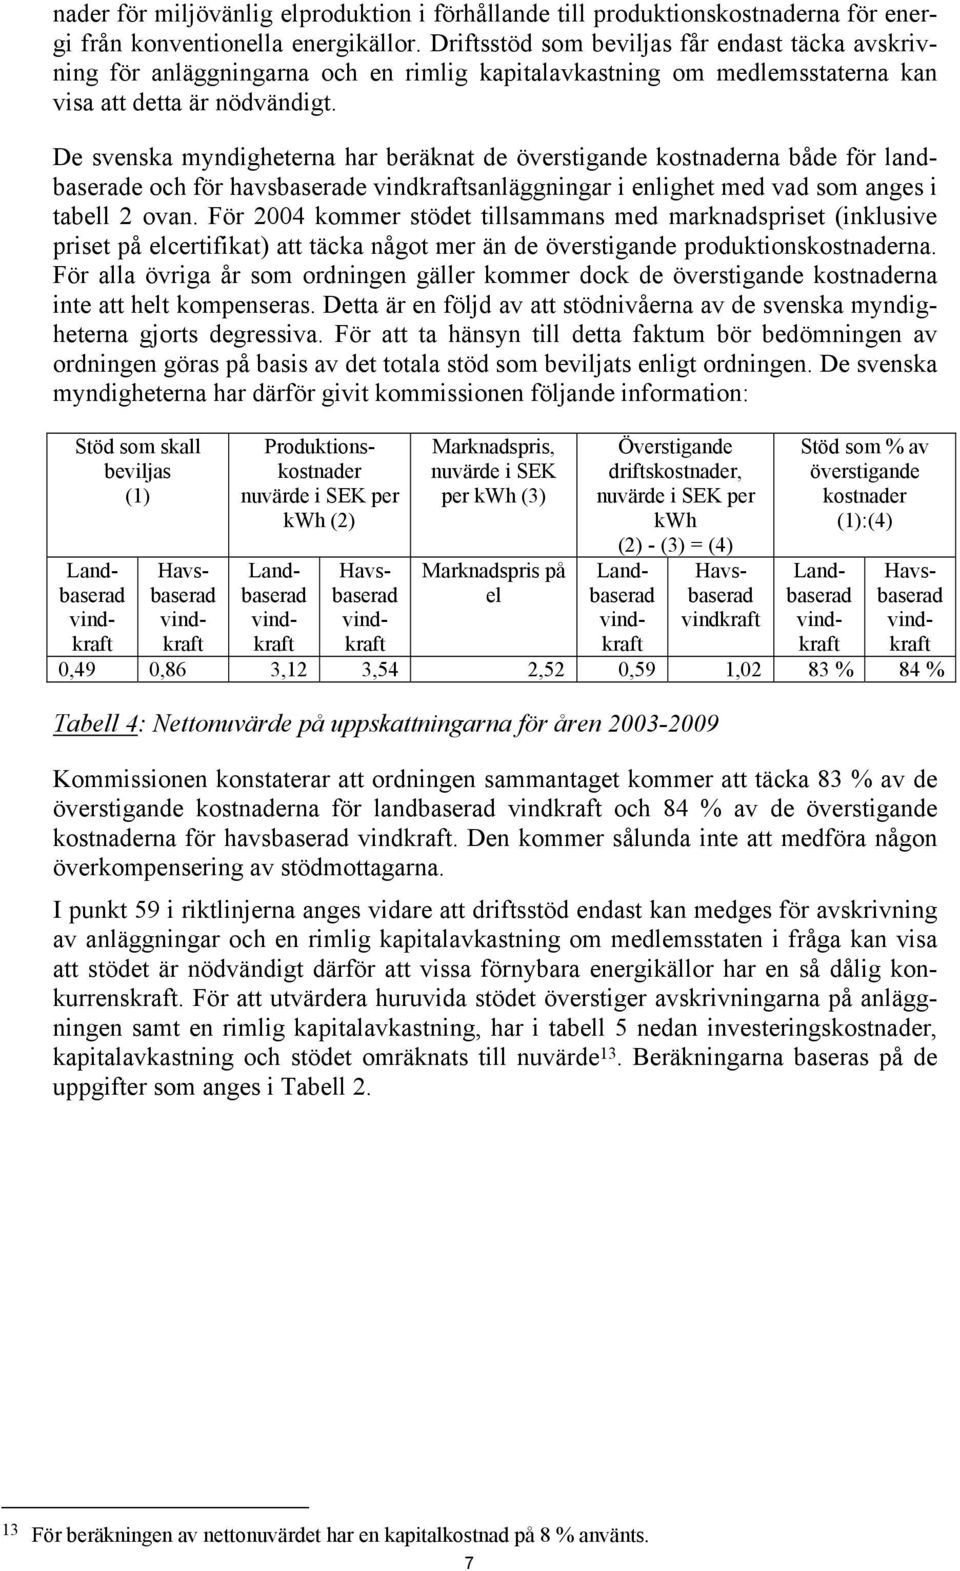 De svenska myndigheterna har beräknat de överstigande kostnaderna både för landbaserade och för havsbaserade sanläggningar i enlighet med vad som anges i tabell 2 ovan.